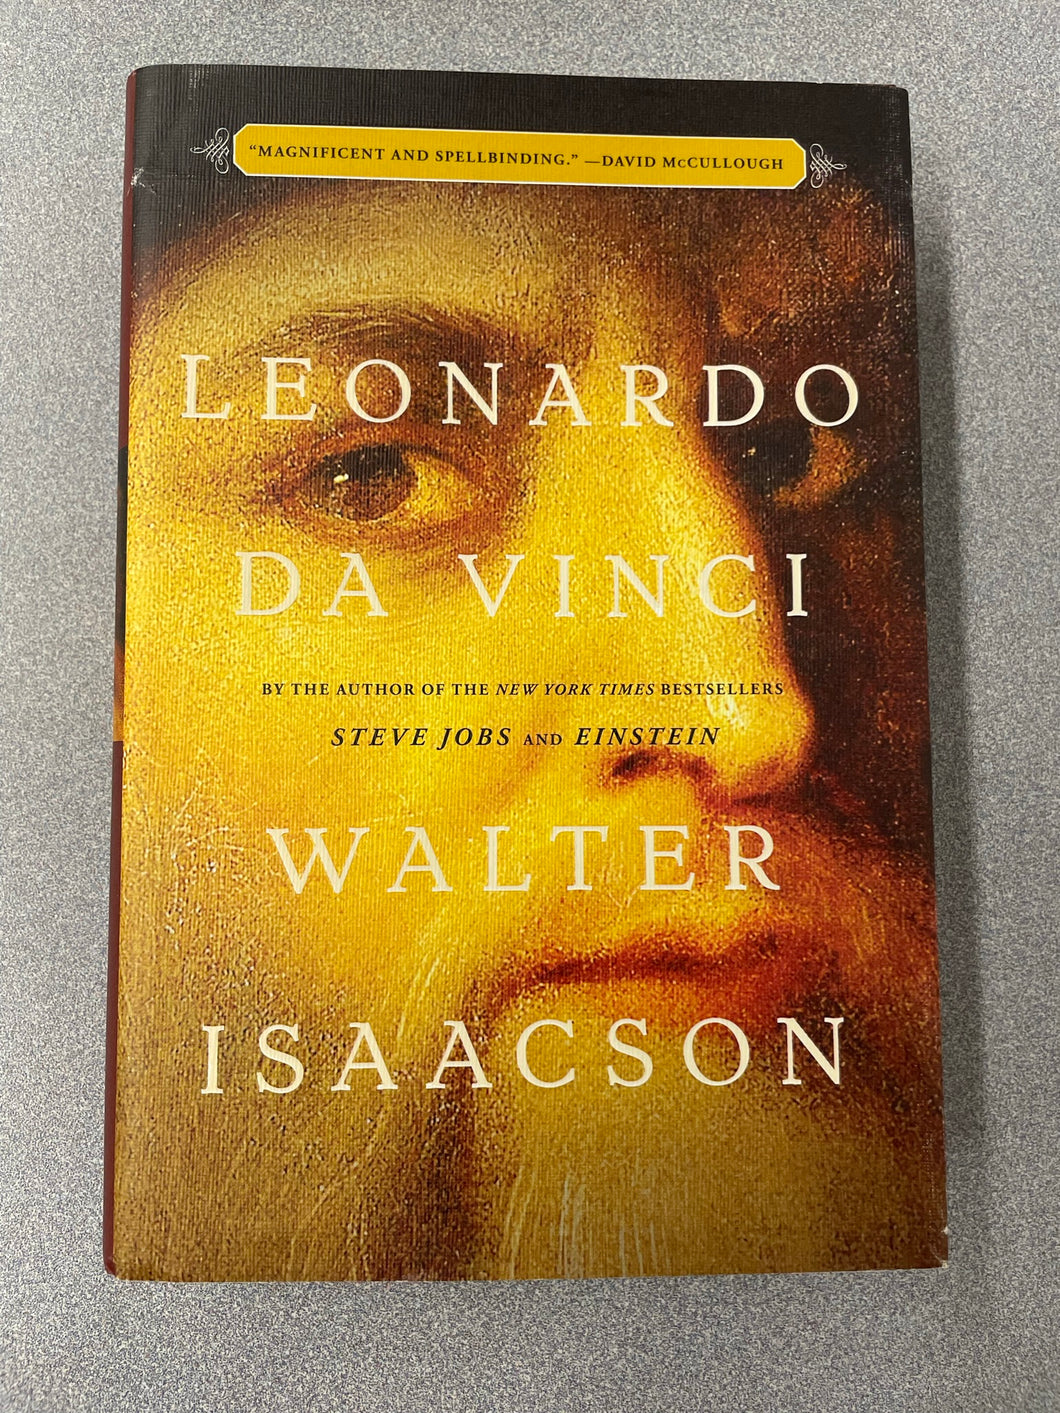 Leonard Da Vinci, Isaacson, Walter [2017] BI 3/23